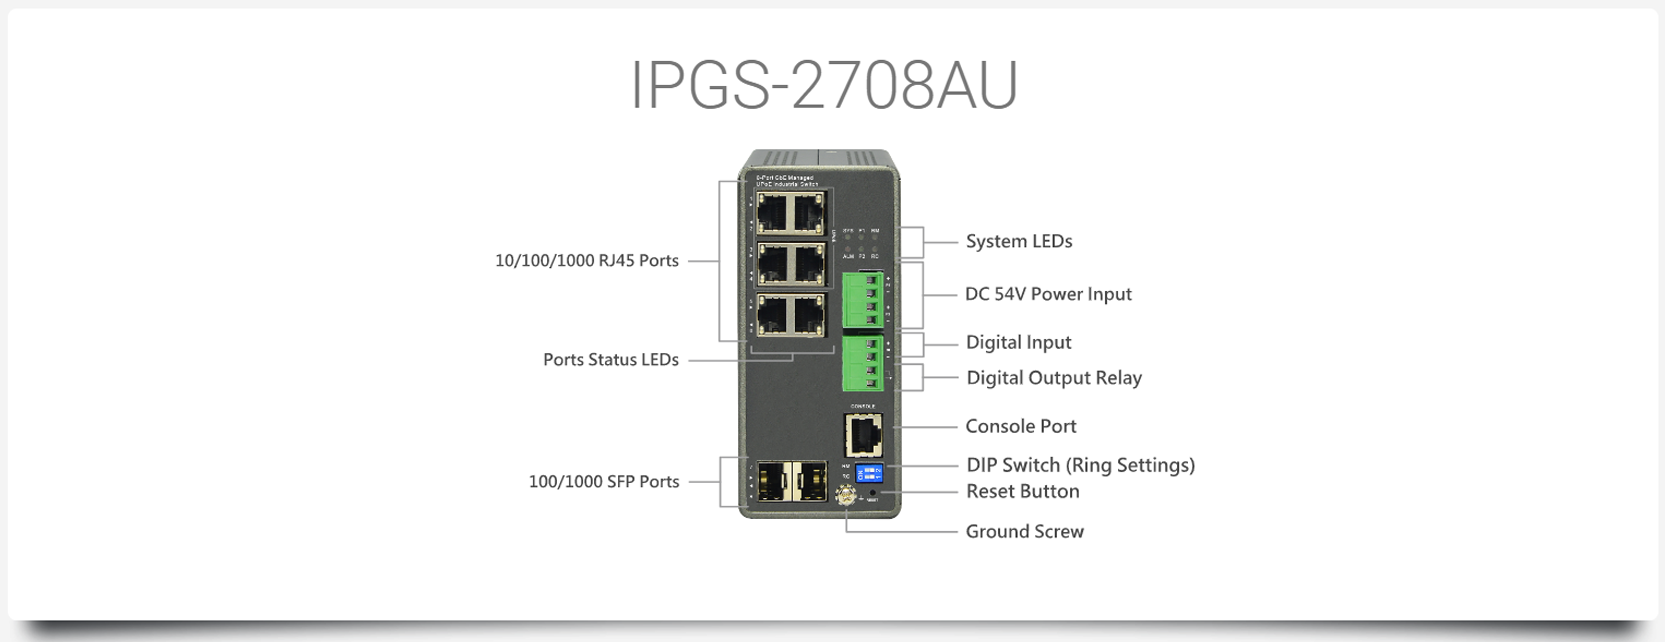 IPGS-2708AU